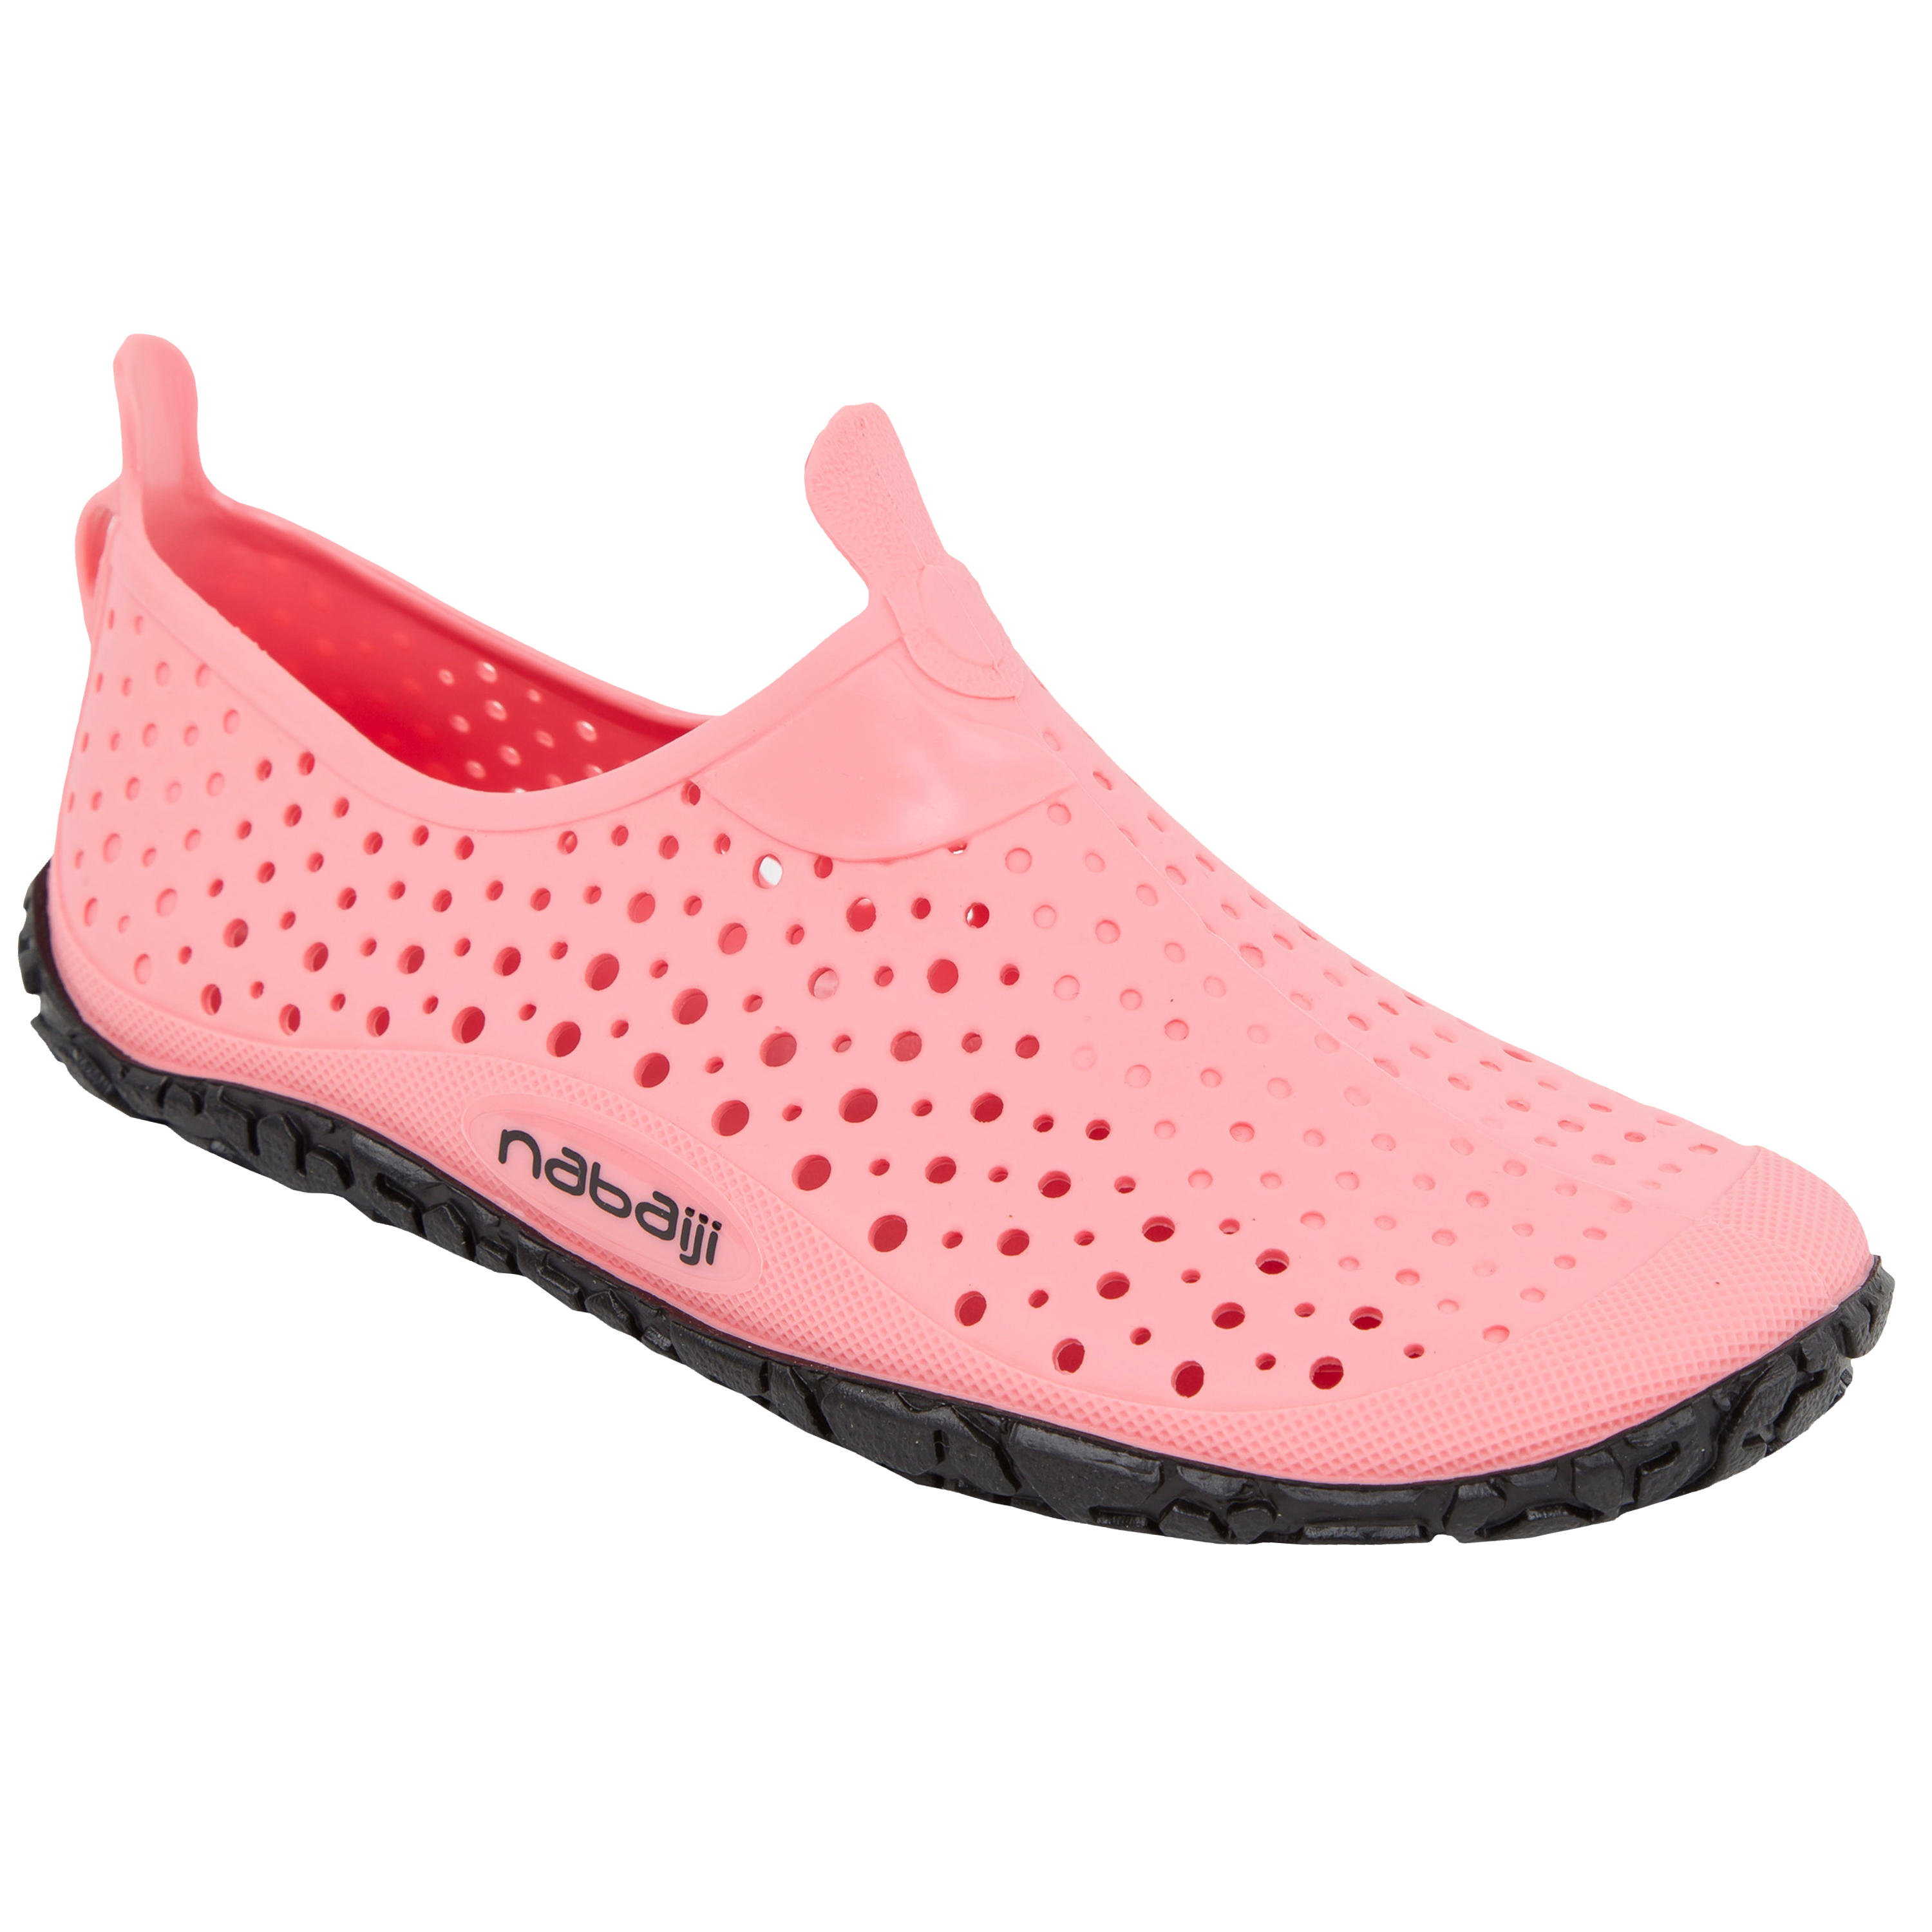 NABAIJI Aquabike-Aquagym Aquatic Shoes Aquadots Pink